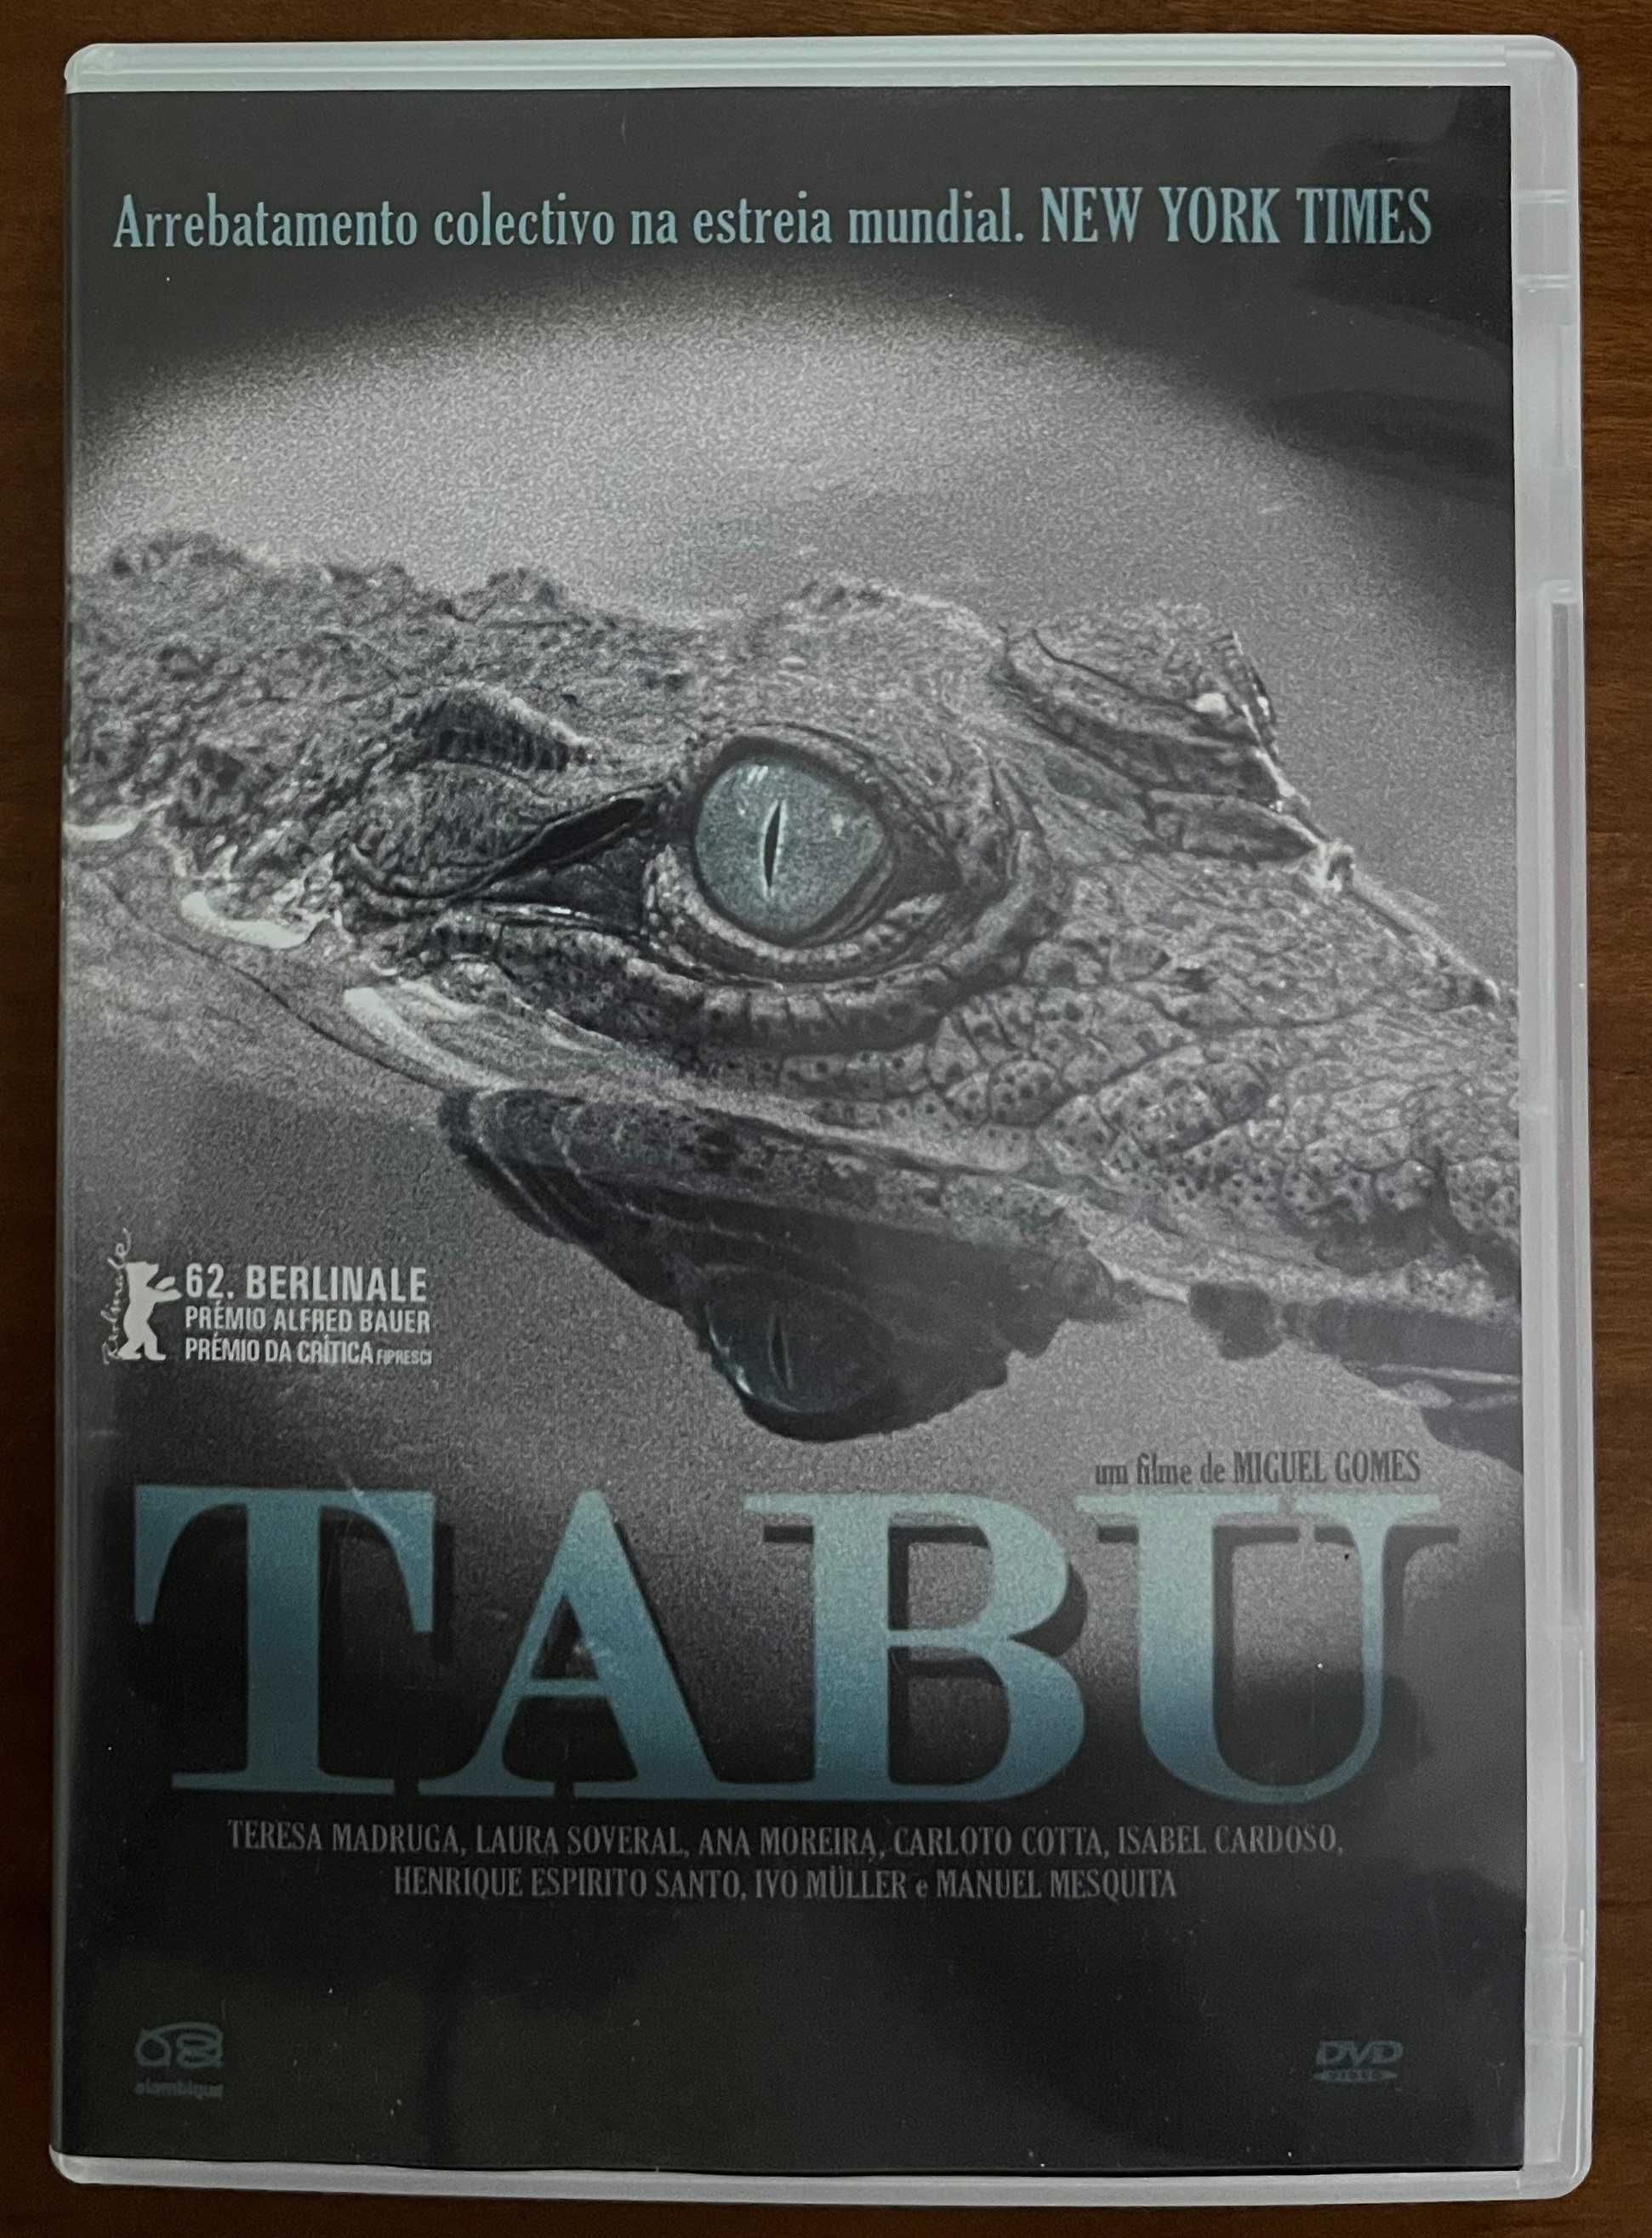 DVD "Tabu" de Miguel Gomes